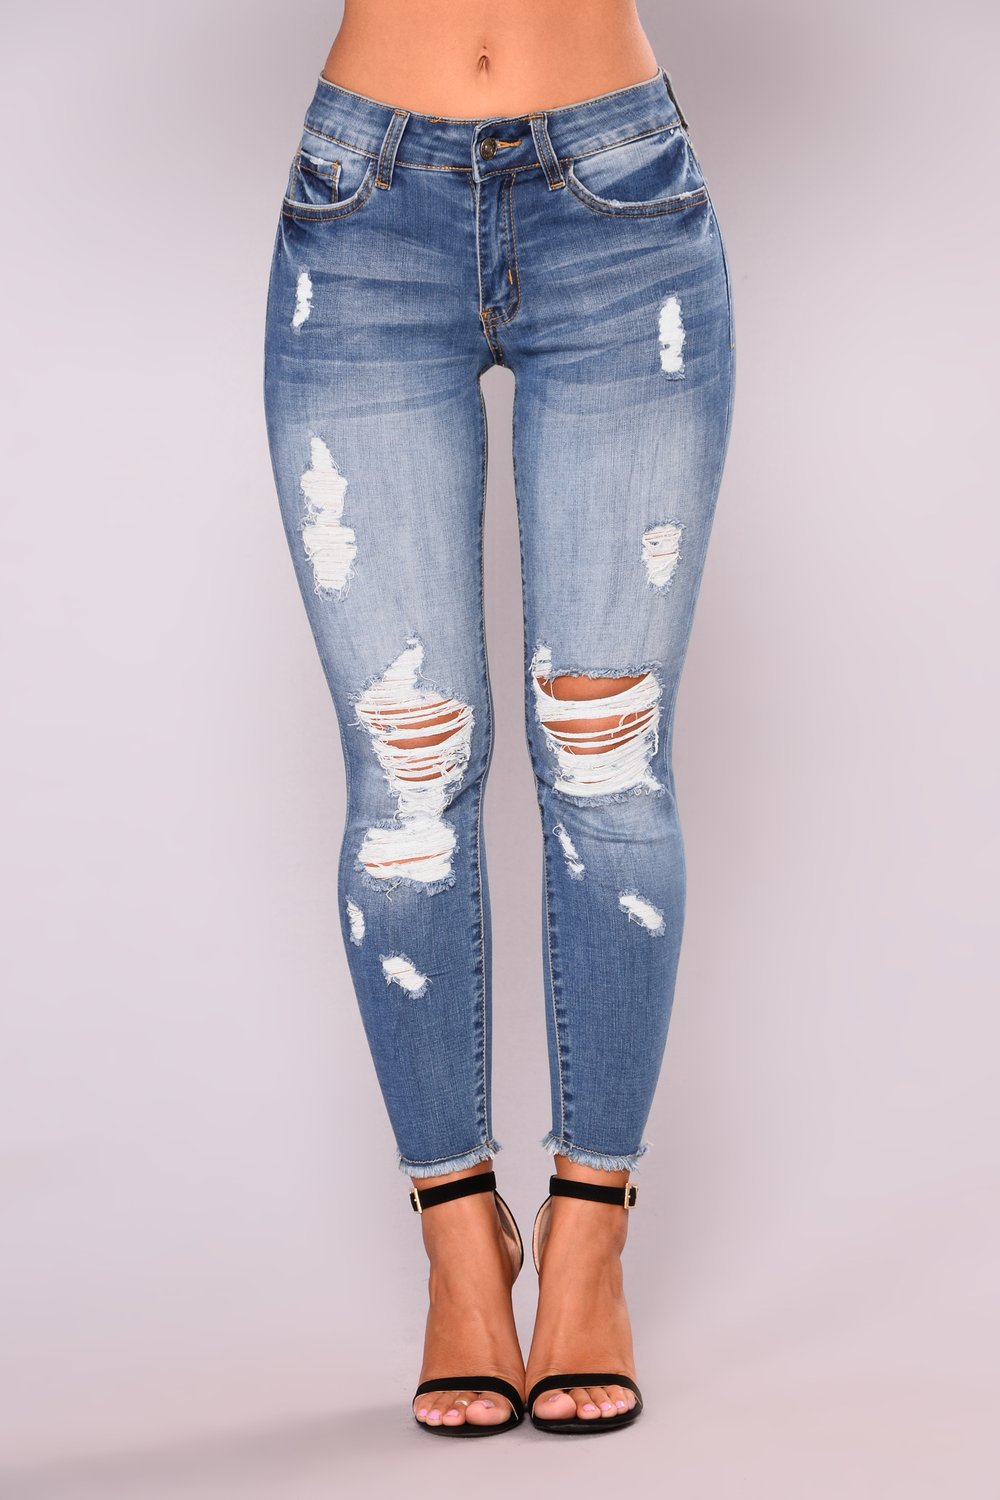 Summer High Street Hipster elástico cortado rasgado jeans de moda feminina de moda